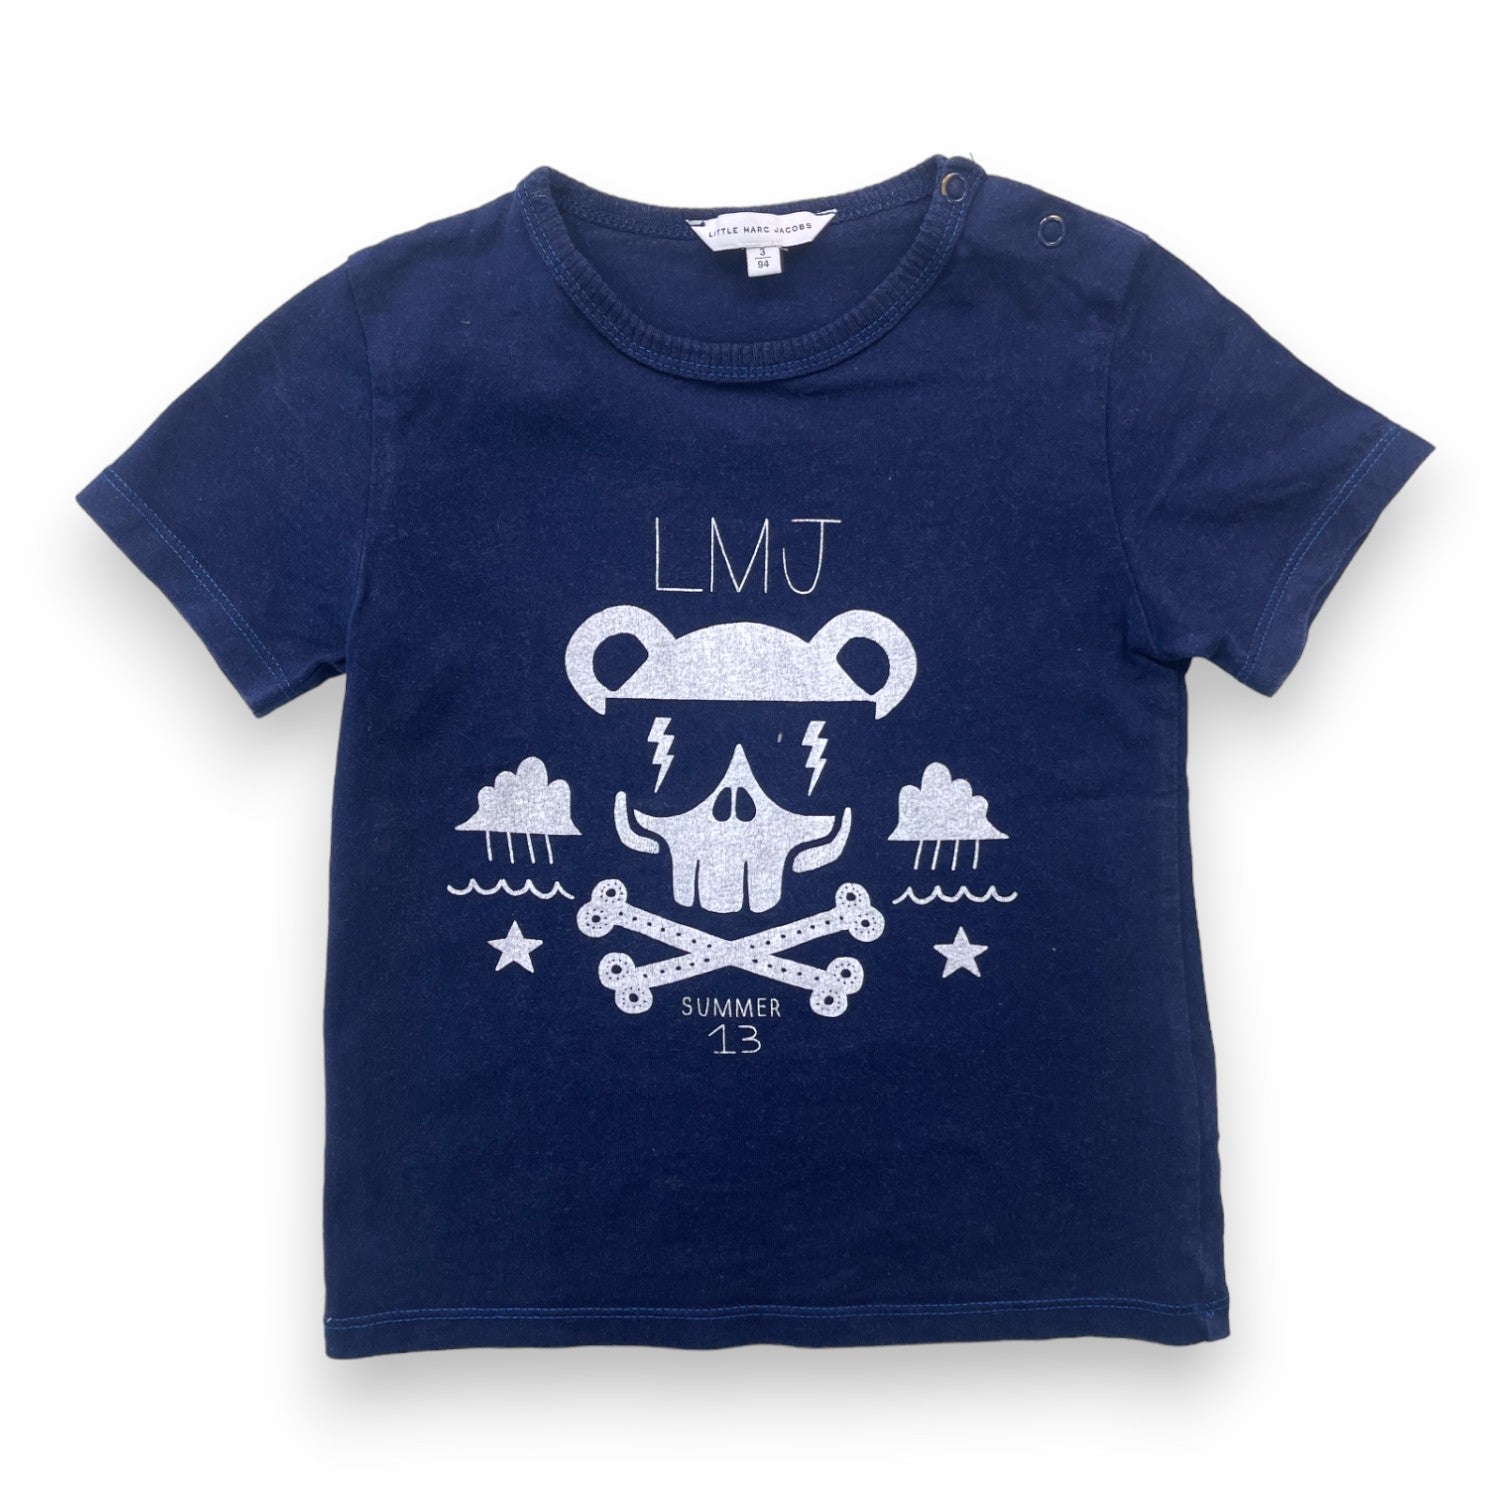 LITTLE MARC JACOBS - T shirt bleu marine à motifs - 3 ans